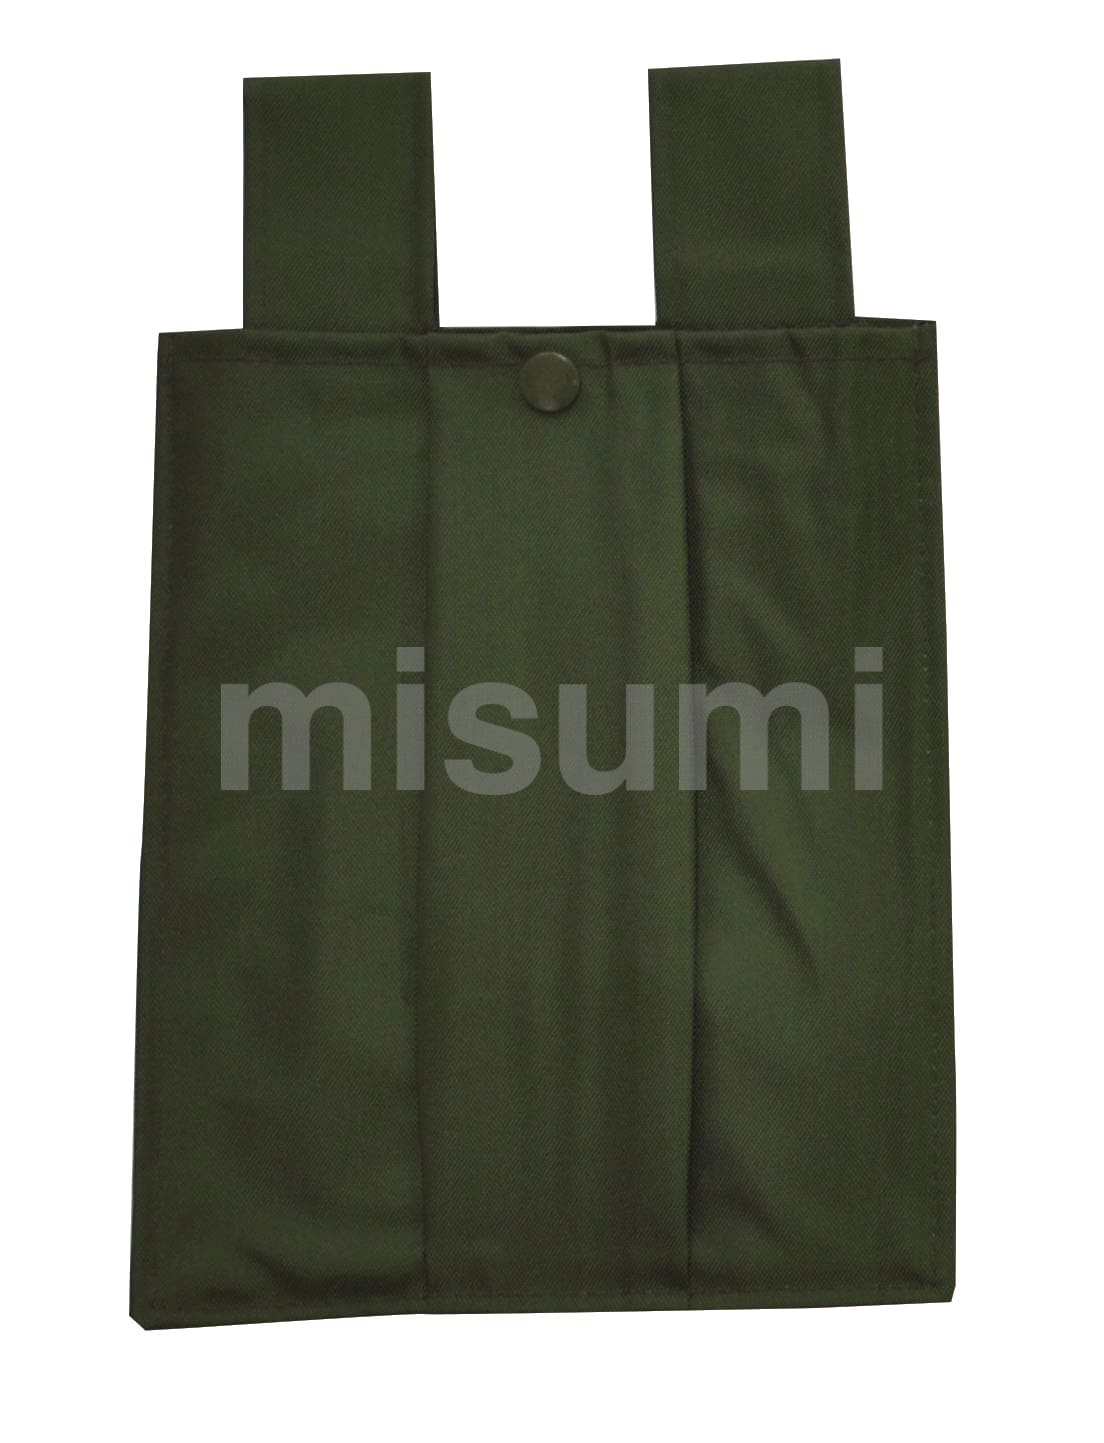 ロープ式安全帯用収納袋 タイタン MISUMI(ミスミ)